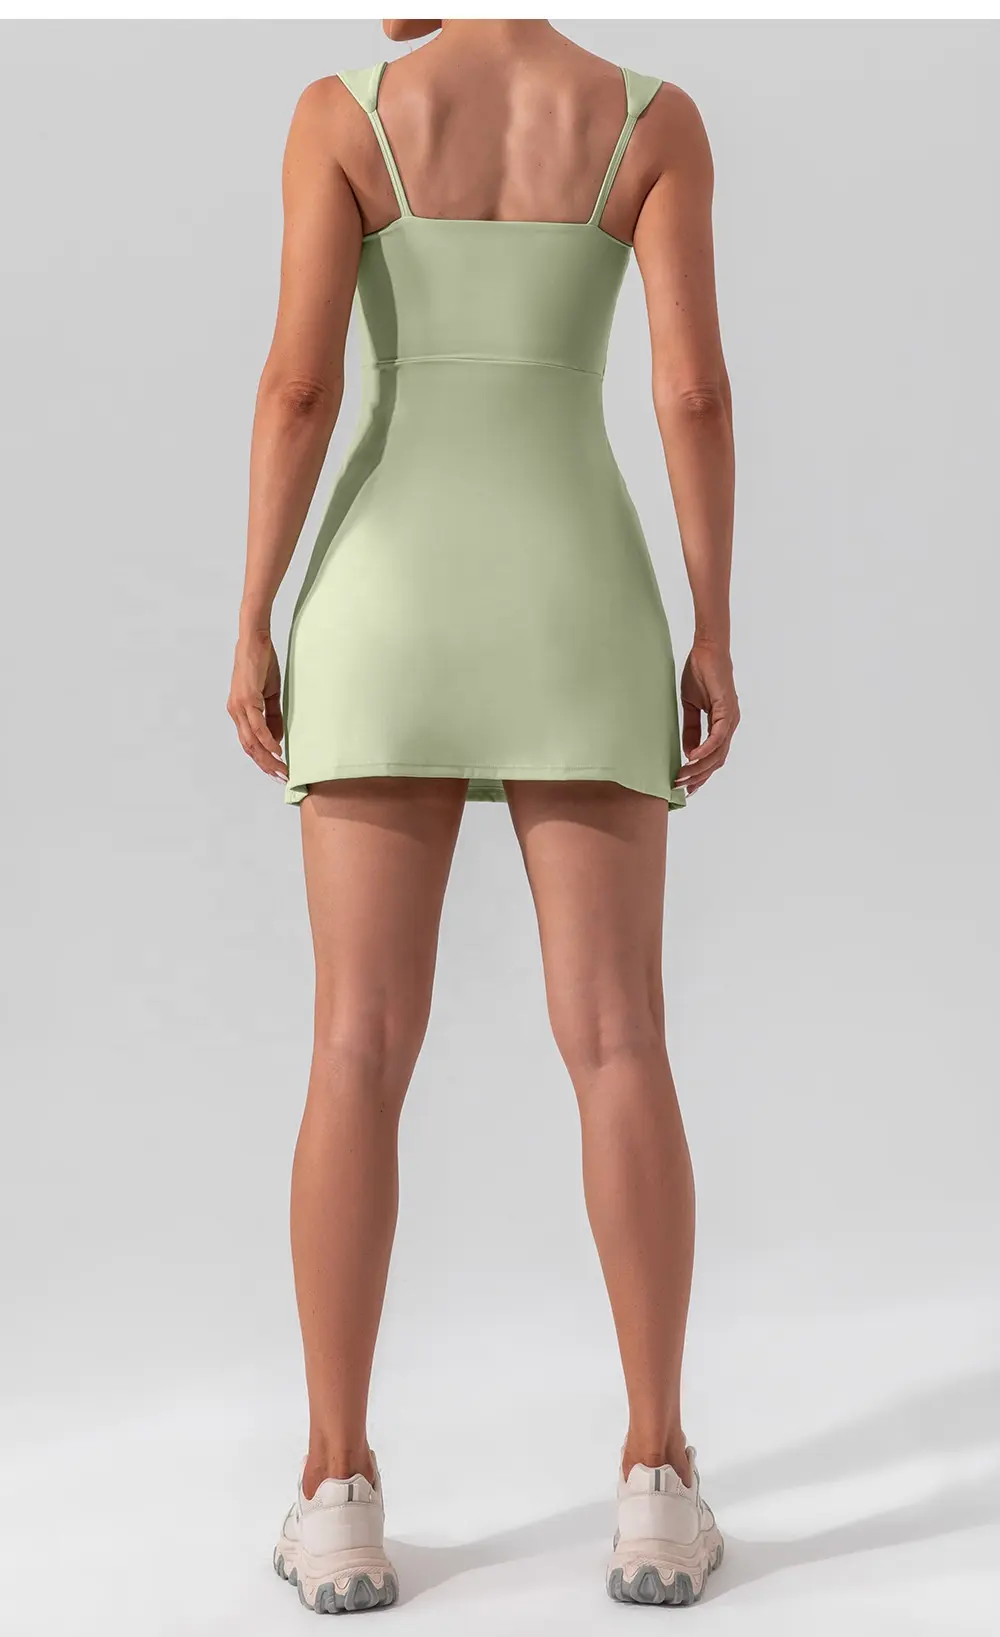 女性のためのユニークなデザインのハイウエスト肌に優しい通気性フィットネスプリーツロングガールズカスタムテニススカートを製造する